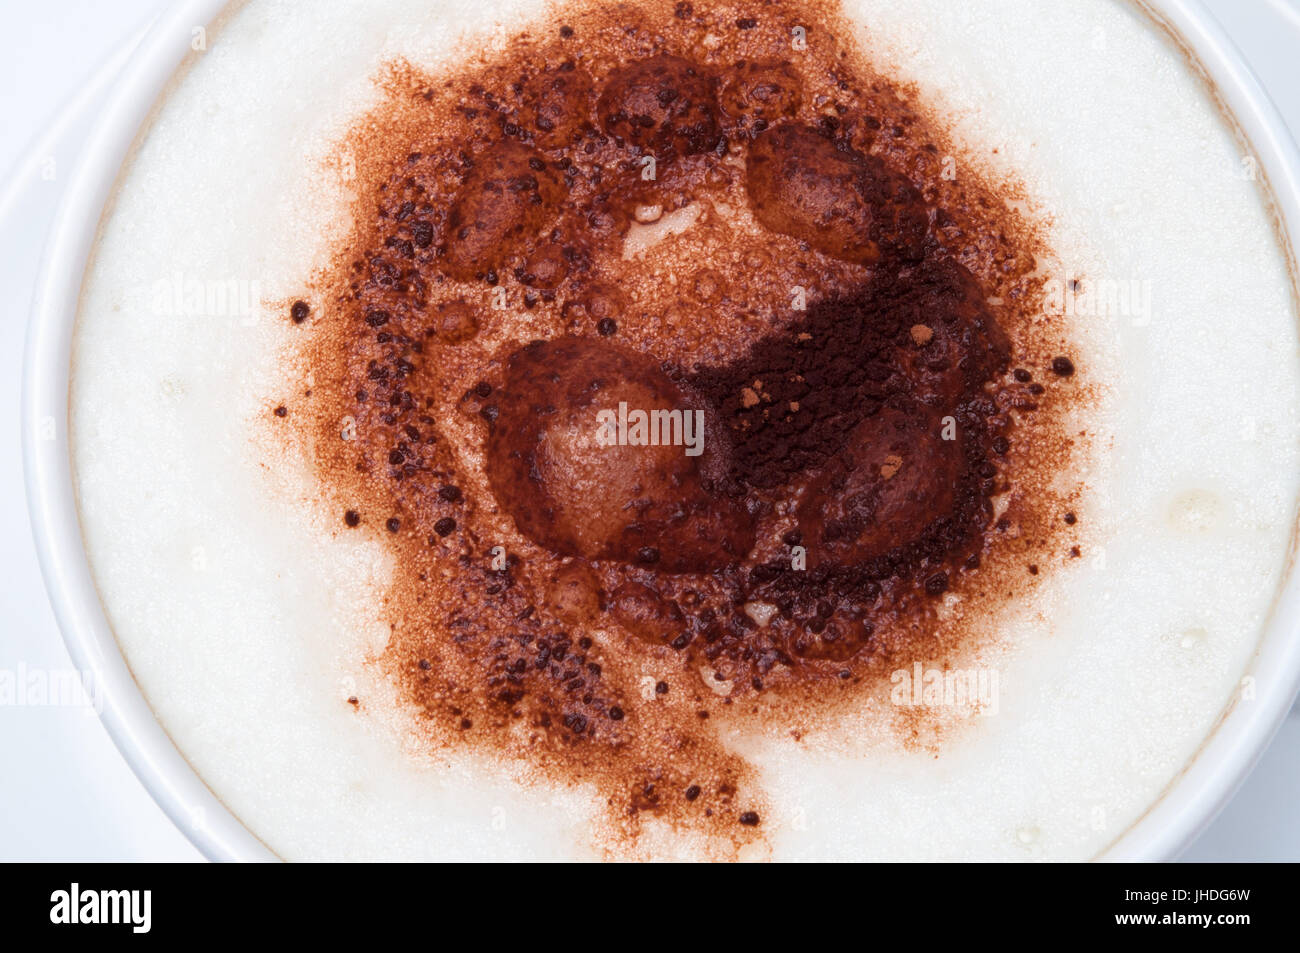 Aufwand der milchige Schaum und Kakao Streusel Richtfest einen Latte oder Cappuccino Kaffee in weiße Tasse mit Untertasse hautnah. Stockfoto